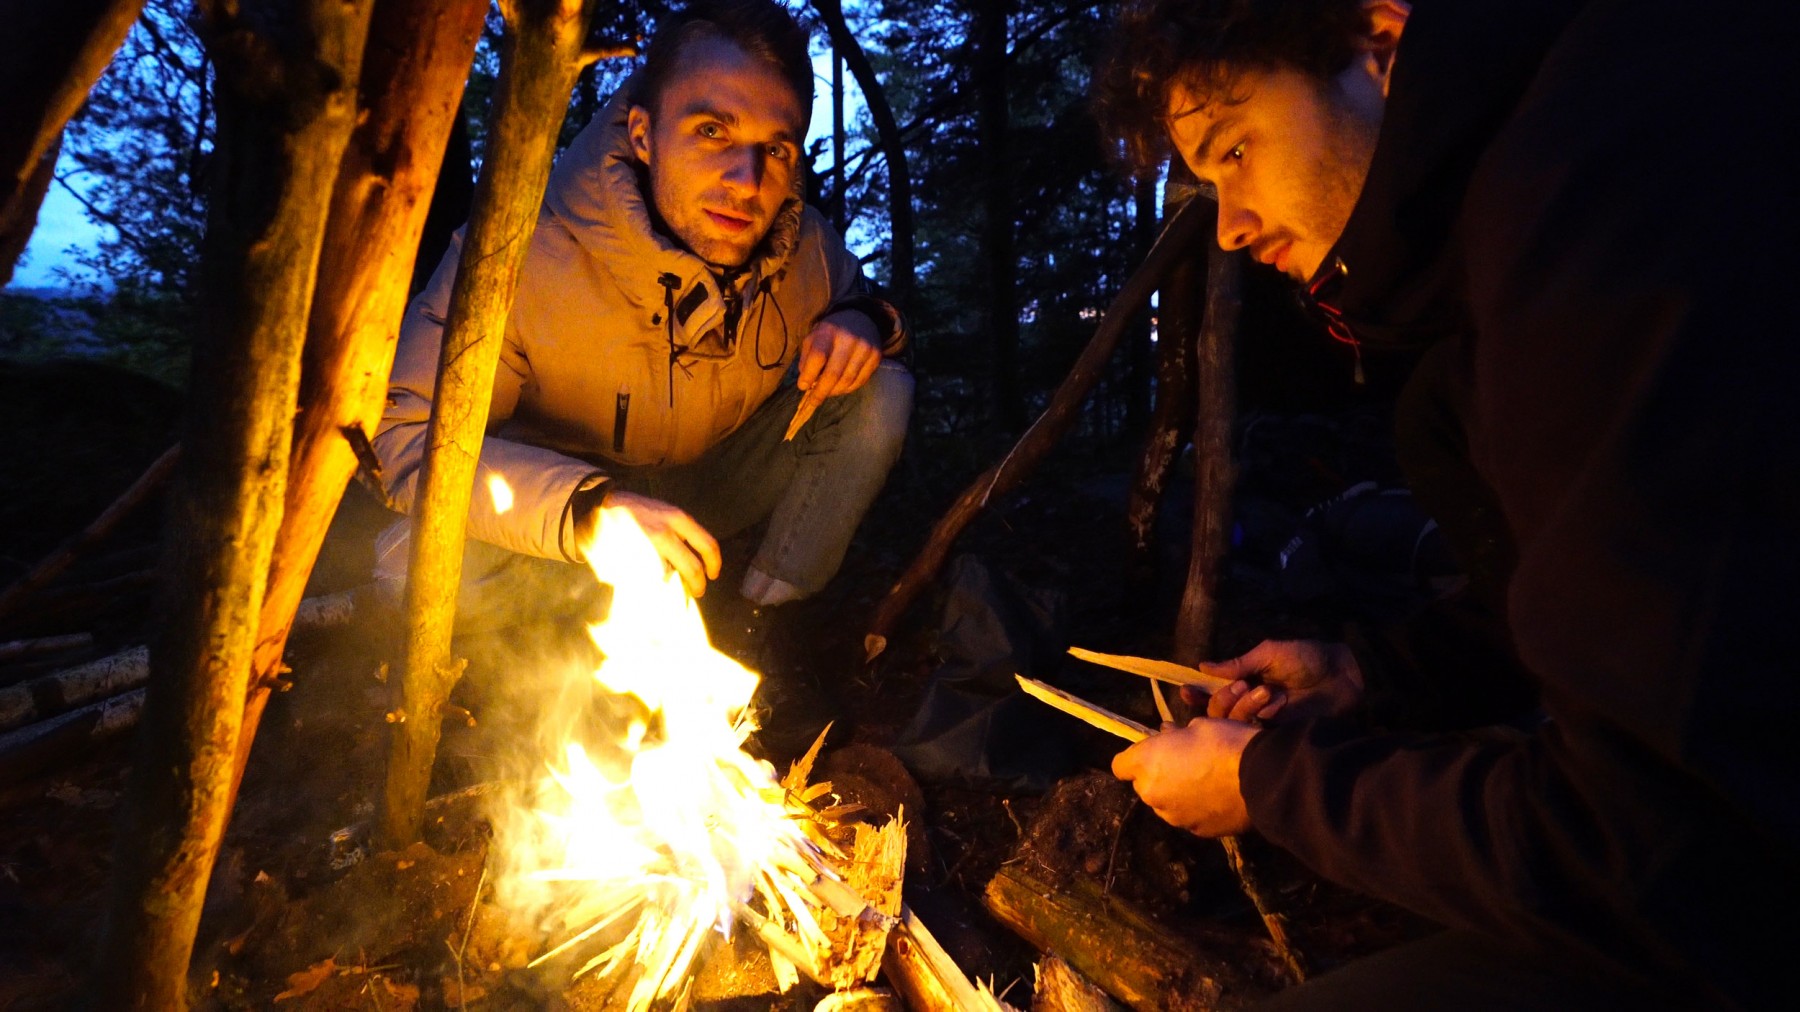 Squeezie et François autours du feu de camps (Nuit dans la forêt)